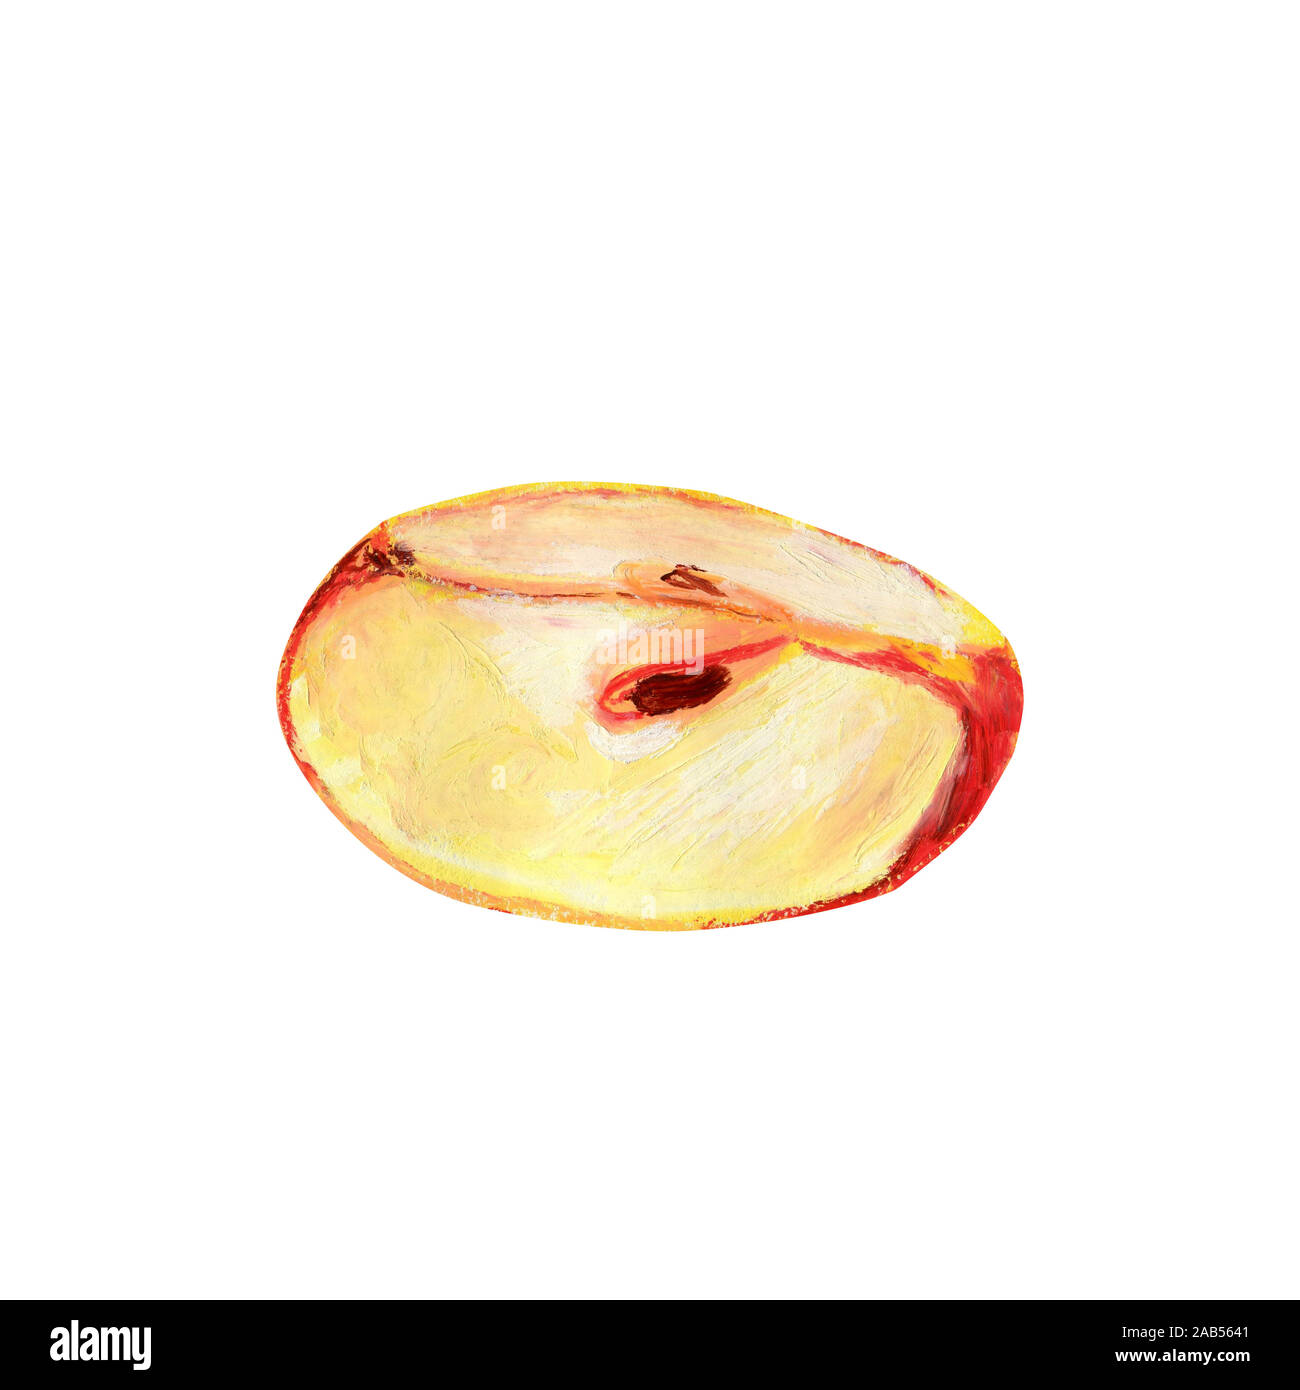 Ein Stück roten Apfel auf einem weißen Hintergrund. Ein Viertel der reifen  Frucht mit Fruchtfleisch und Samen. Von Hand gezeichnet Öl pastell  Illustration für Essen label de Stockfotografie - Alamy